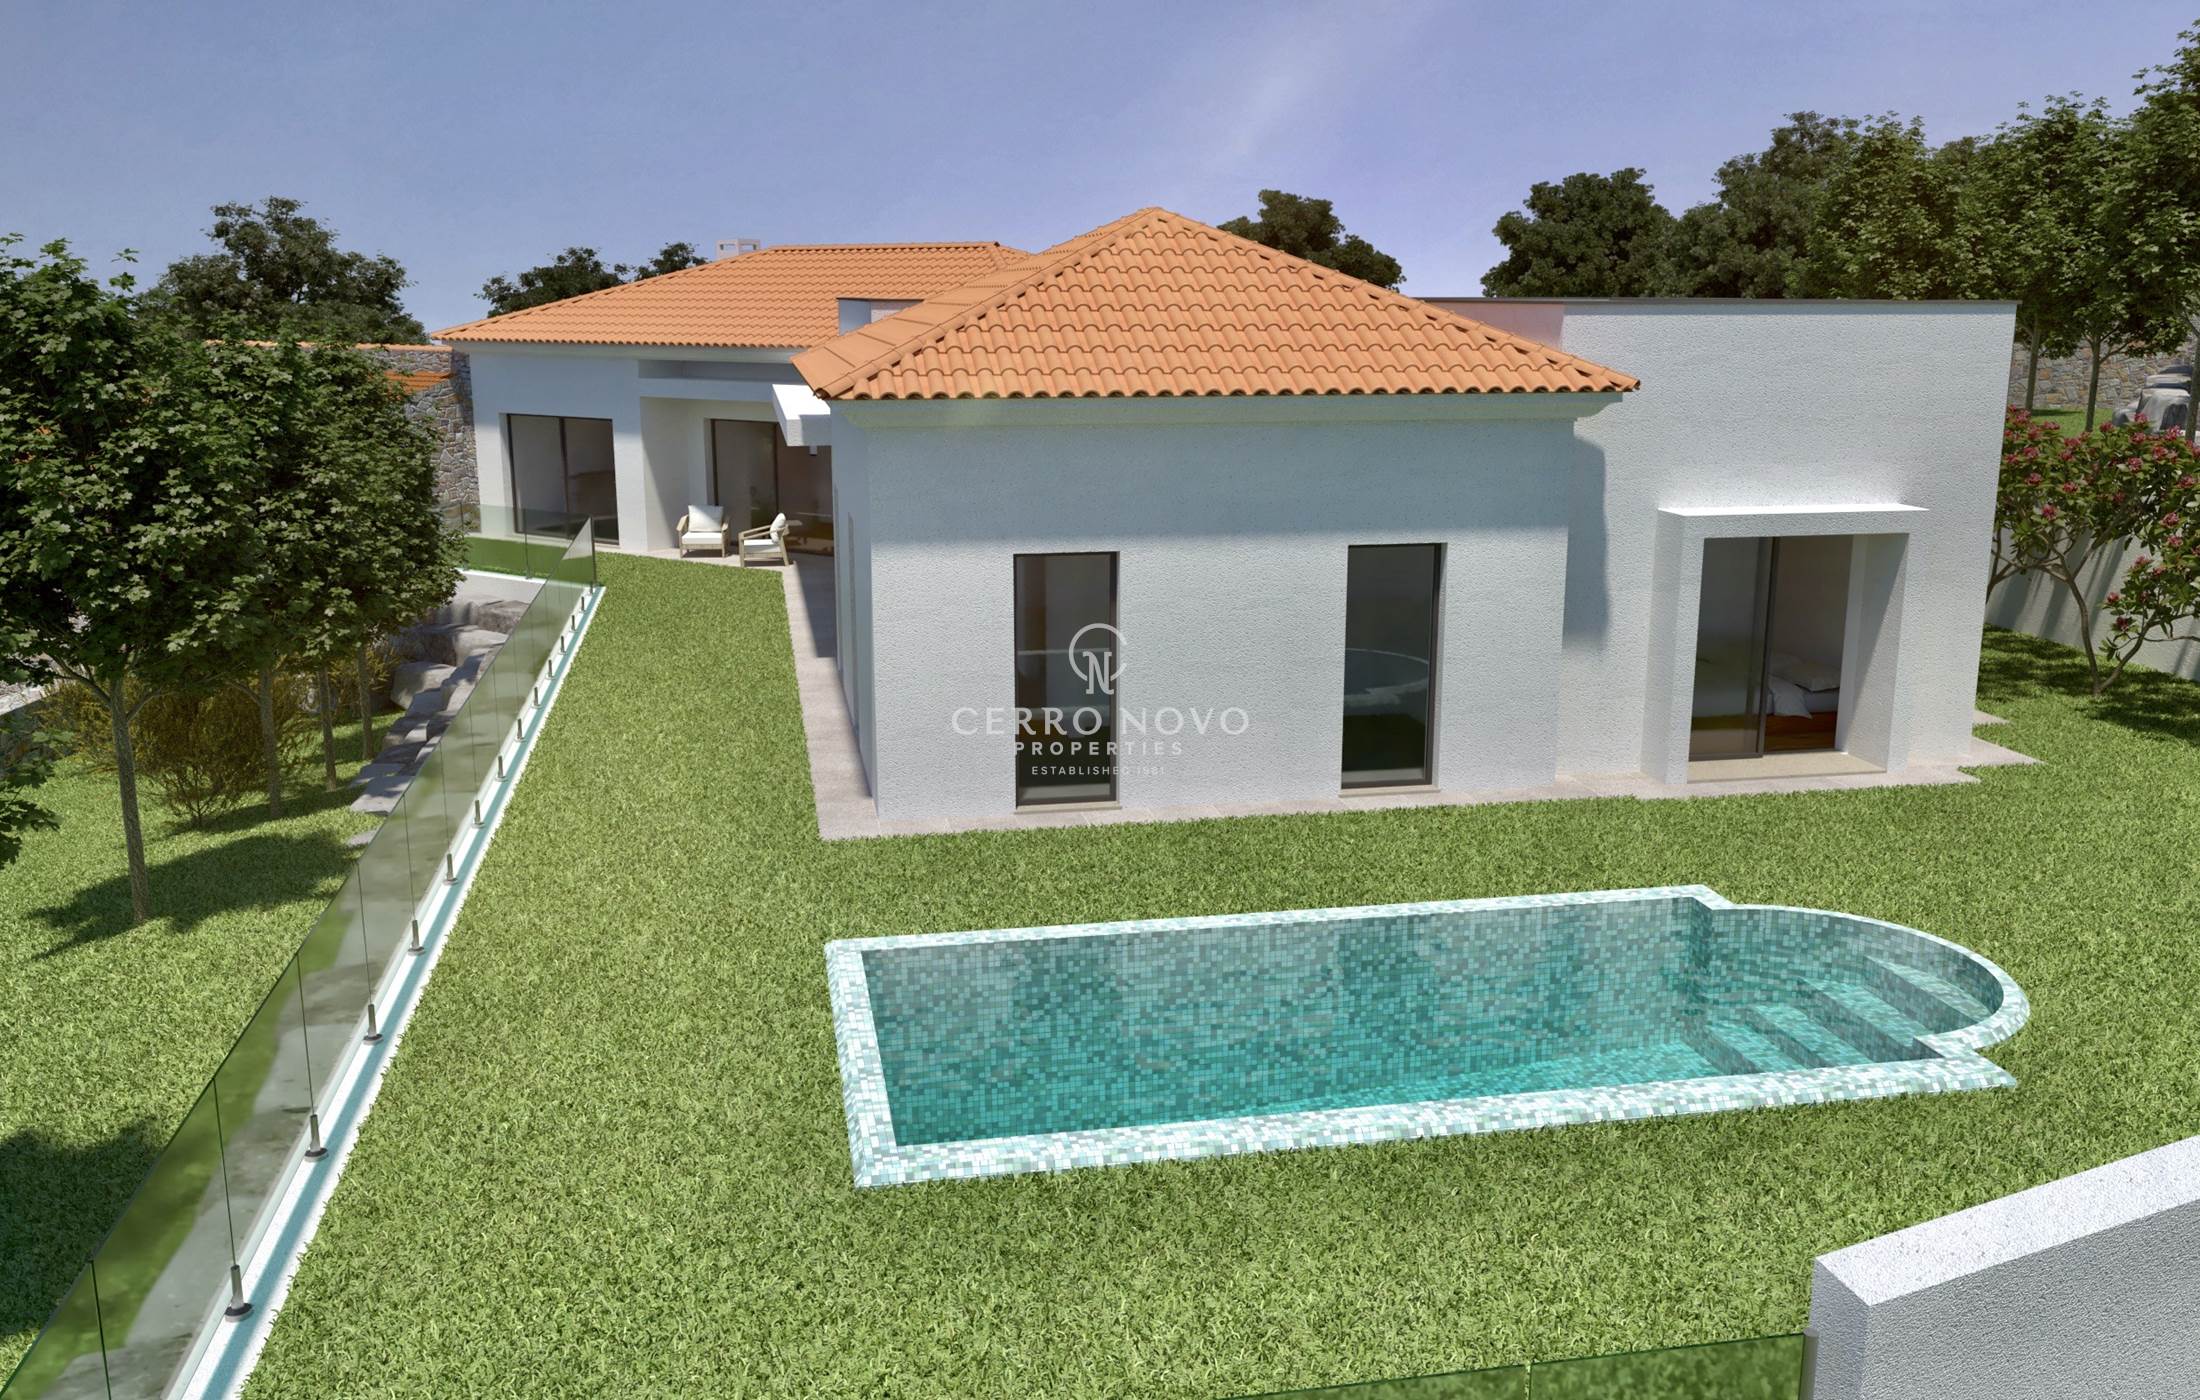 Excellent terrain avec vue sur la mer et projet approuvé pour construire une villa avec piscine